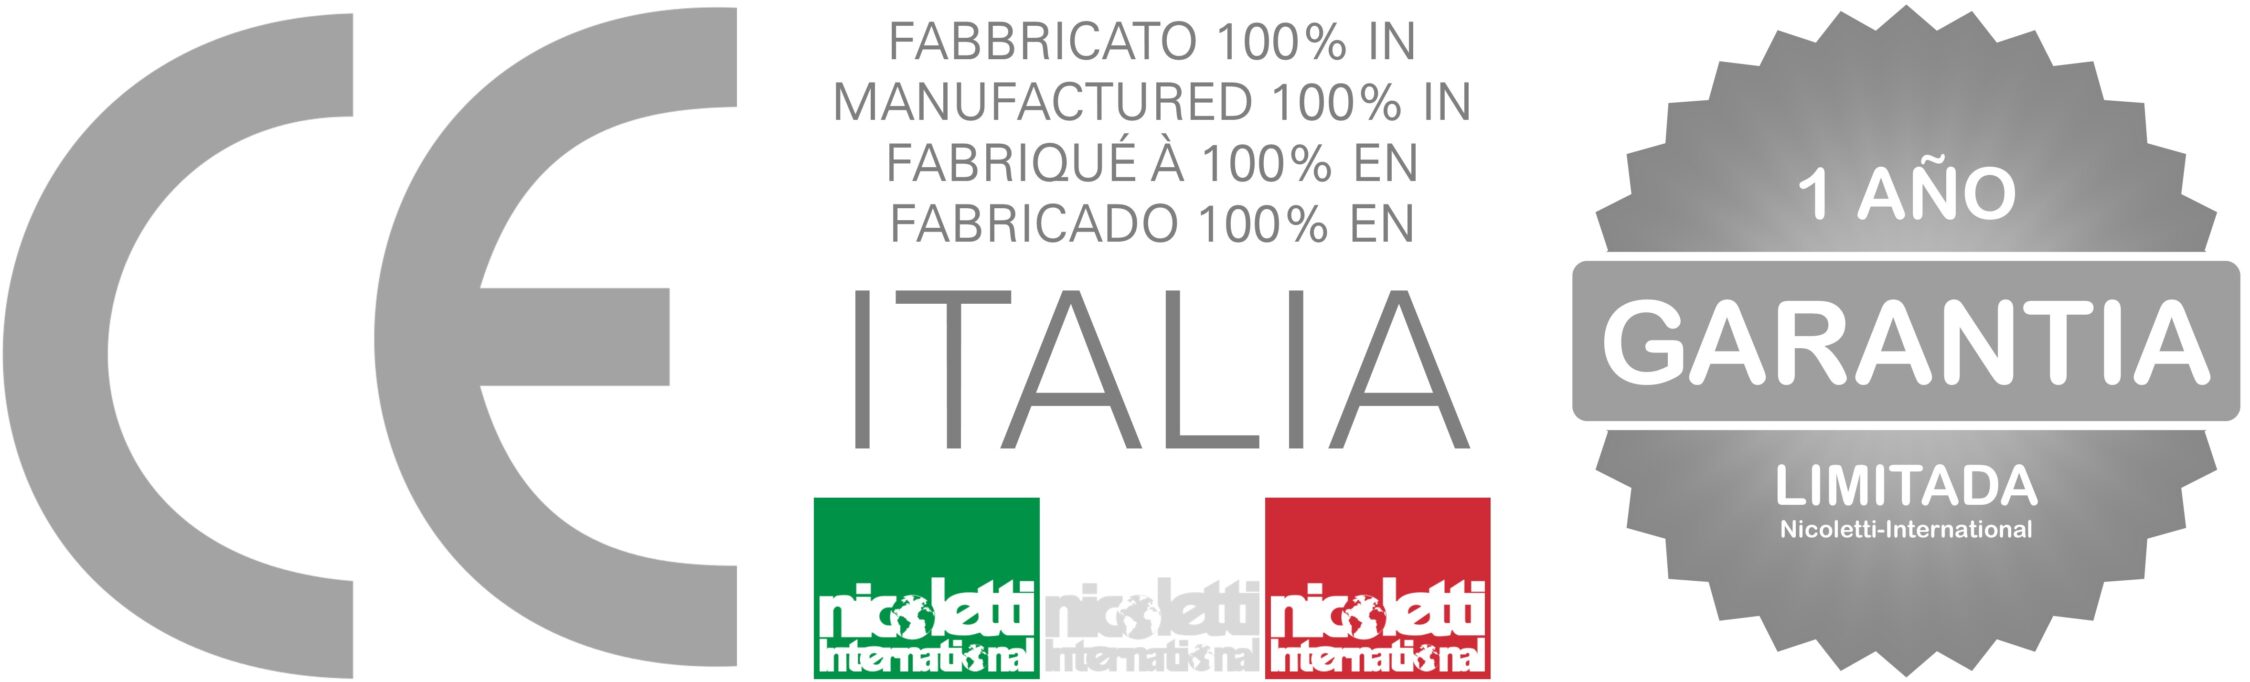 Nicoletti-Castro - CE Italia Garantía